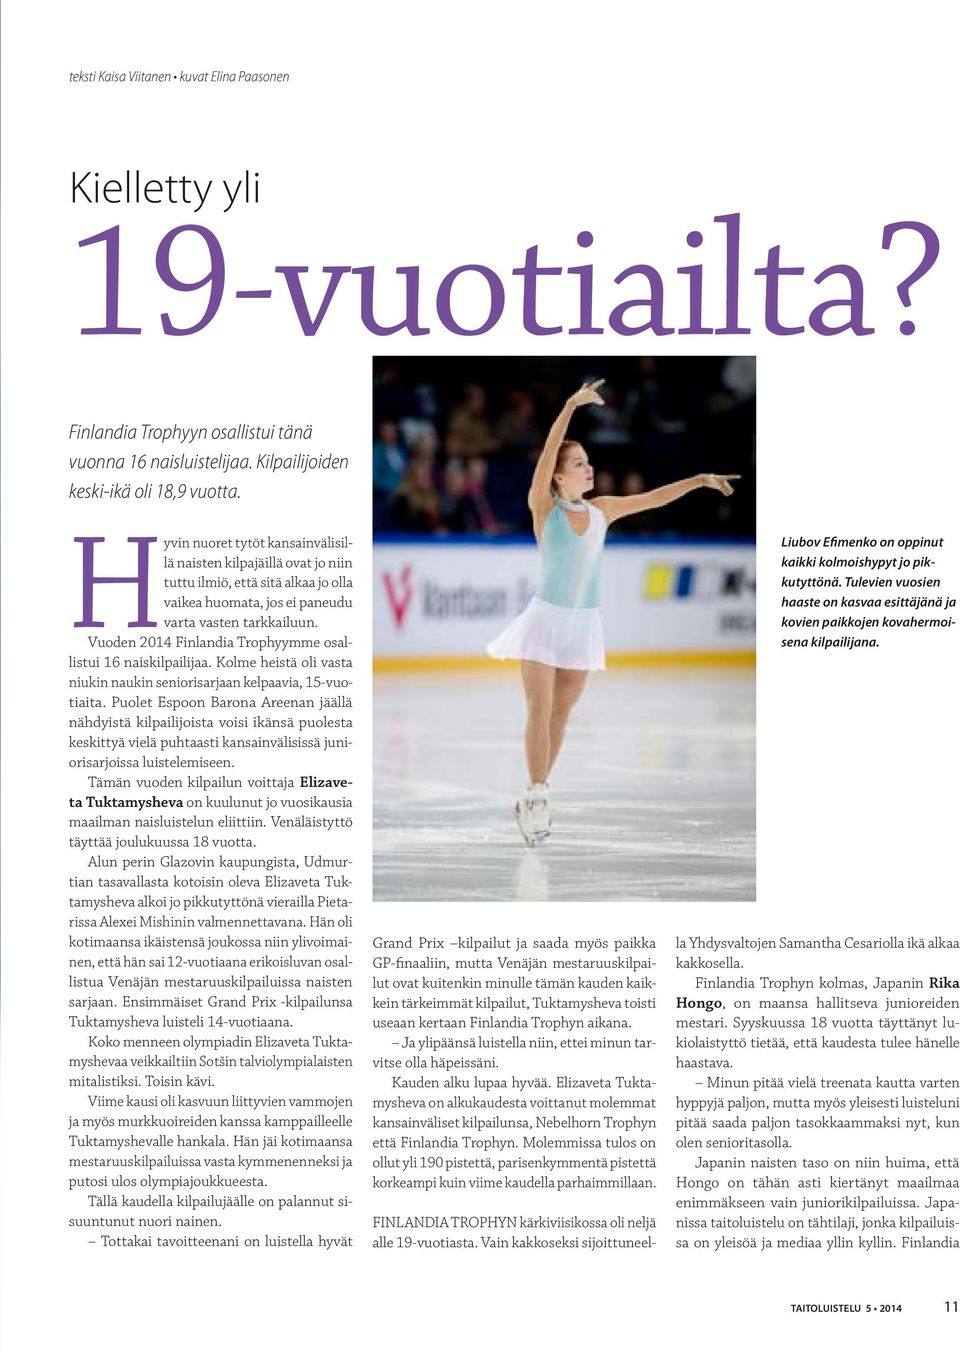 Vuoden 2014 Finlandia Trophyymme osallistui 16 naiskilpailijaa. Kolme heistä oli vasta niukin naukin seniorisarjaan kelpaavia, 15-vuotiaita.